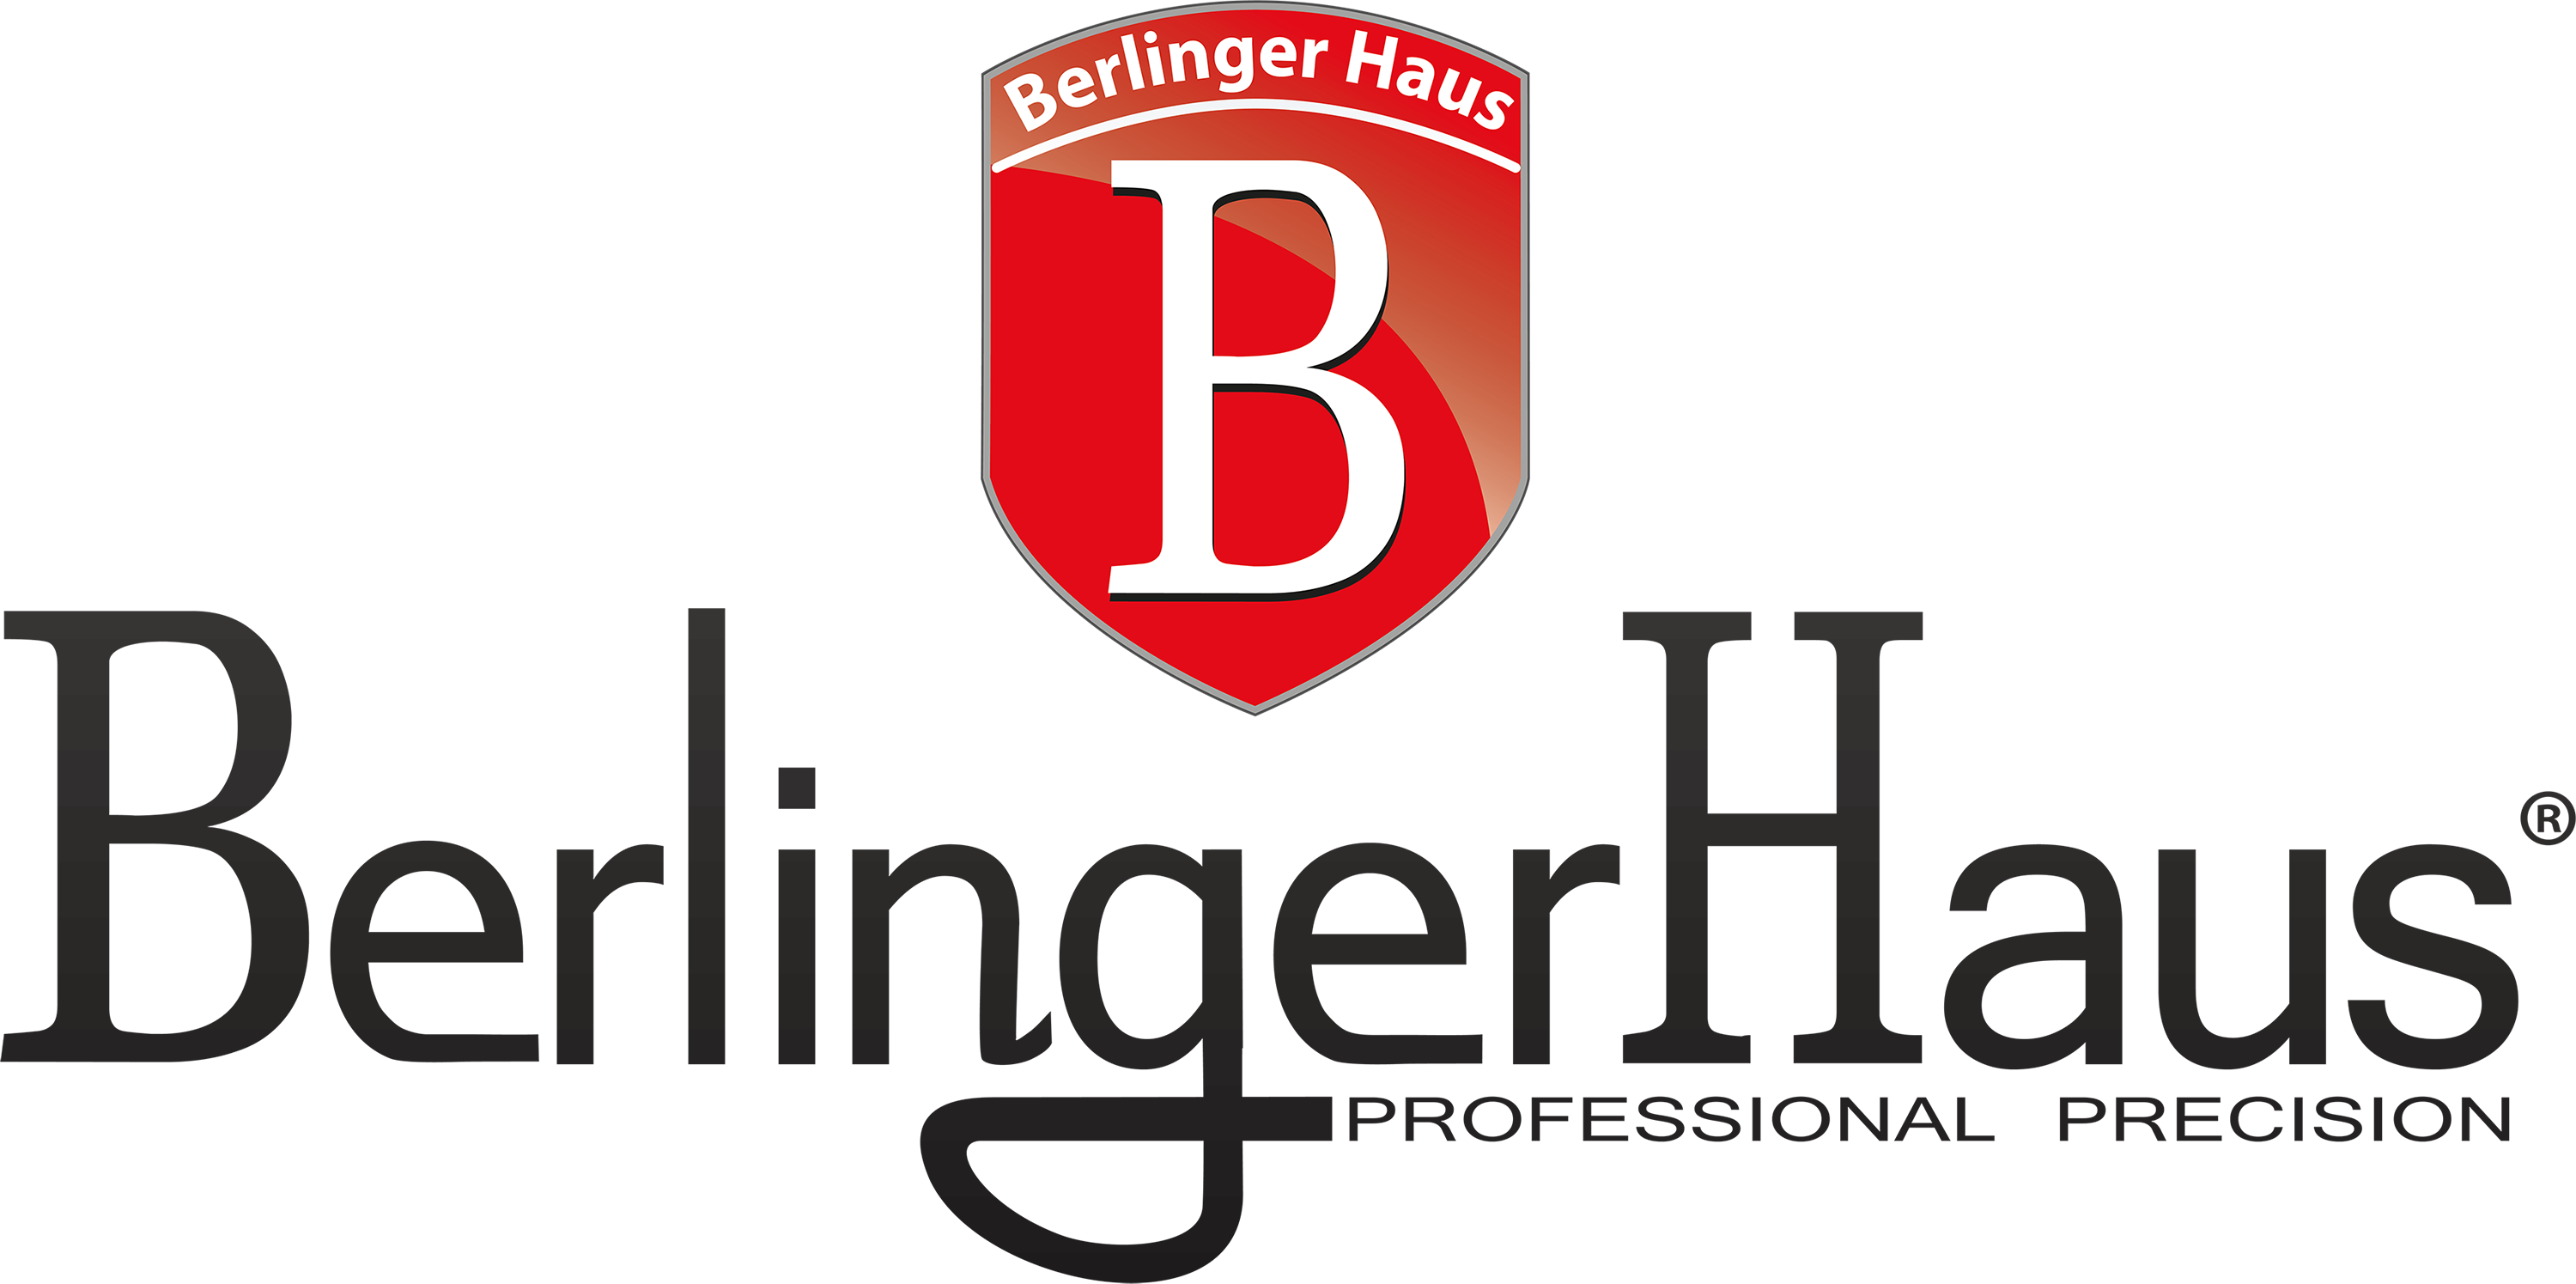 berlingerhaus-full-1.png